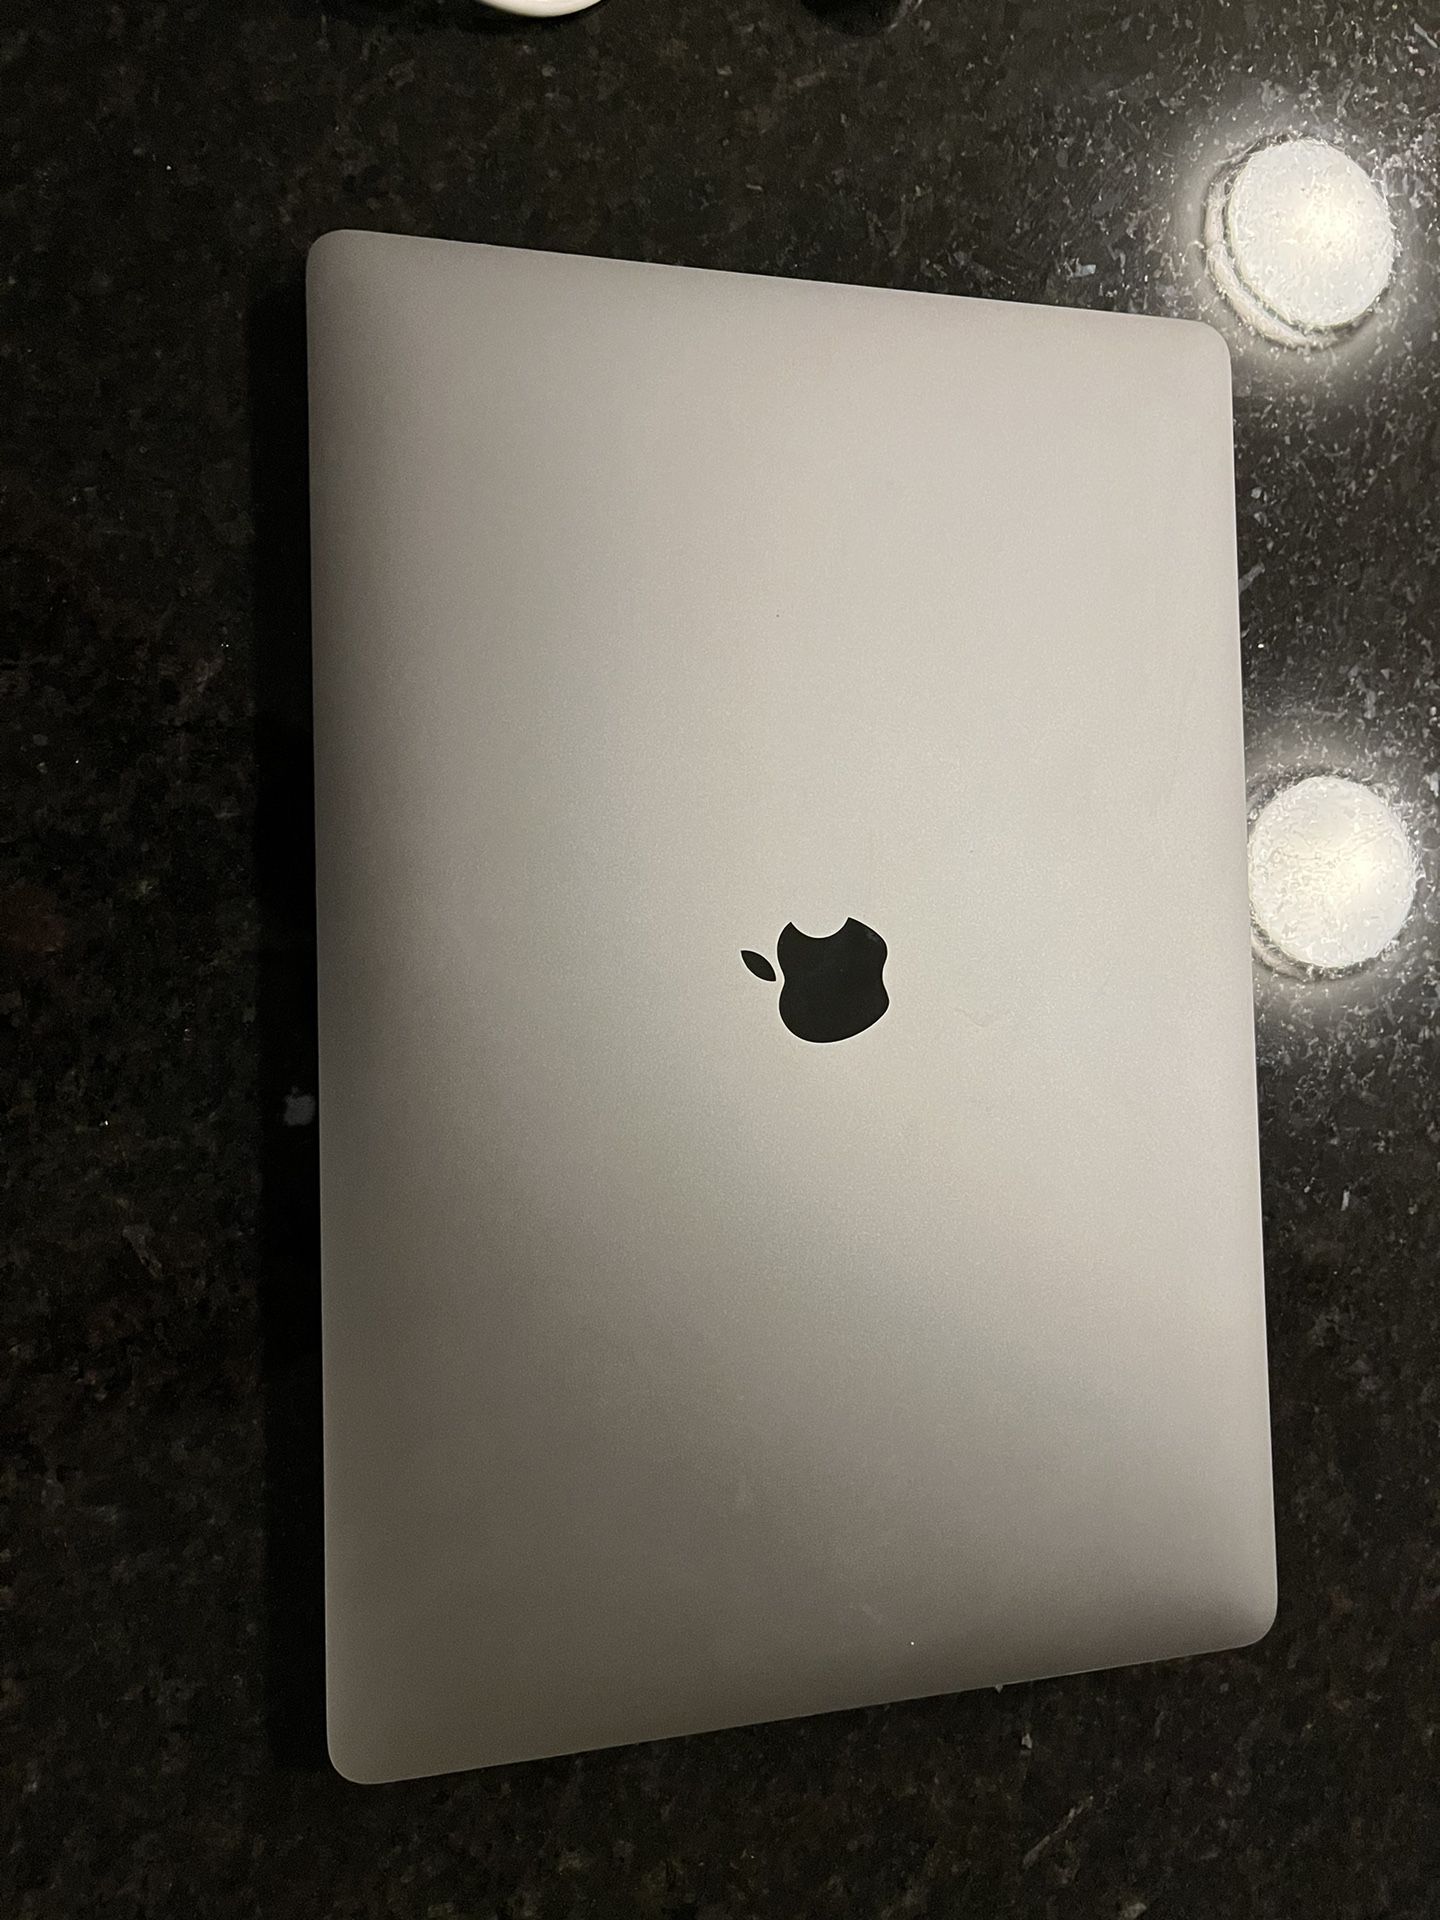 2019 16 Inch MacBook Pro